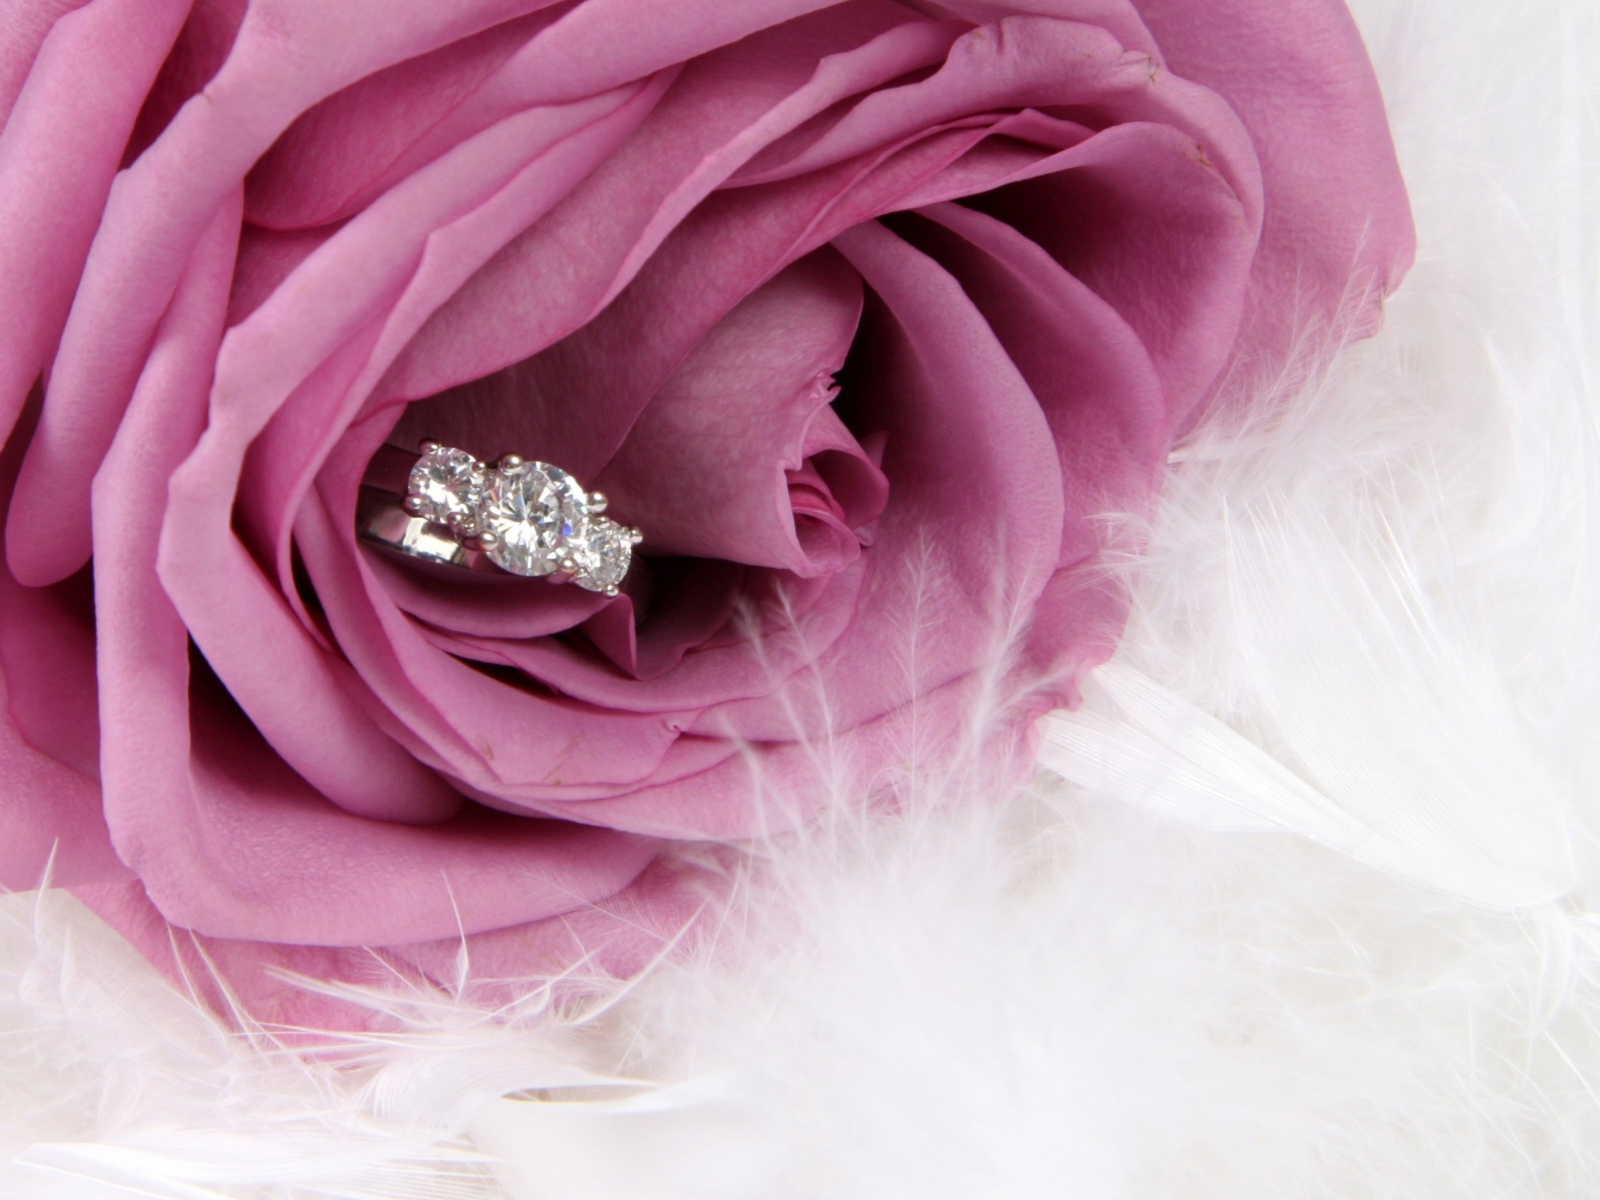 Engagement Ring In Pink Rose screenshot #1 1600x1200